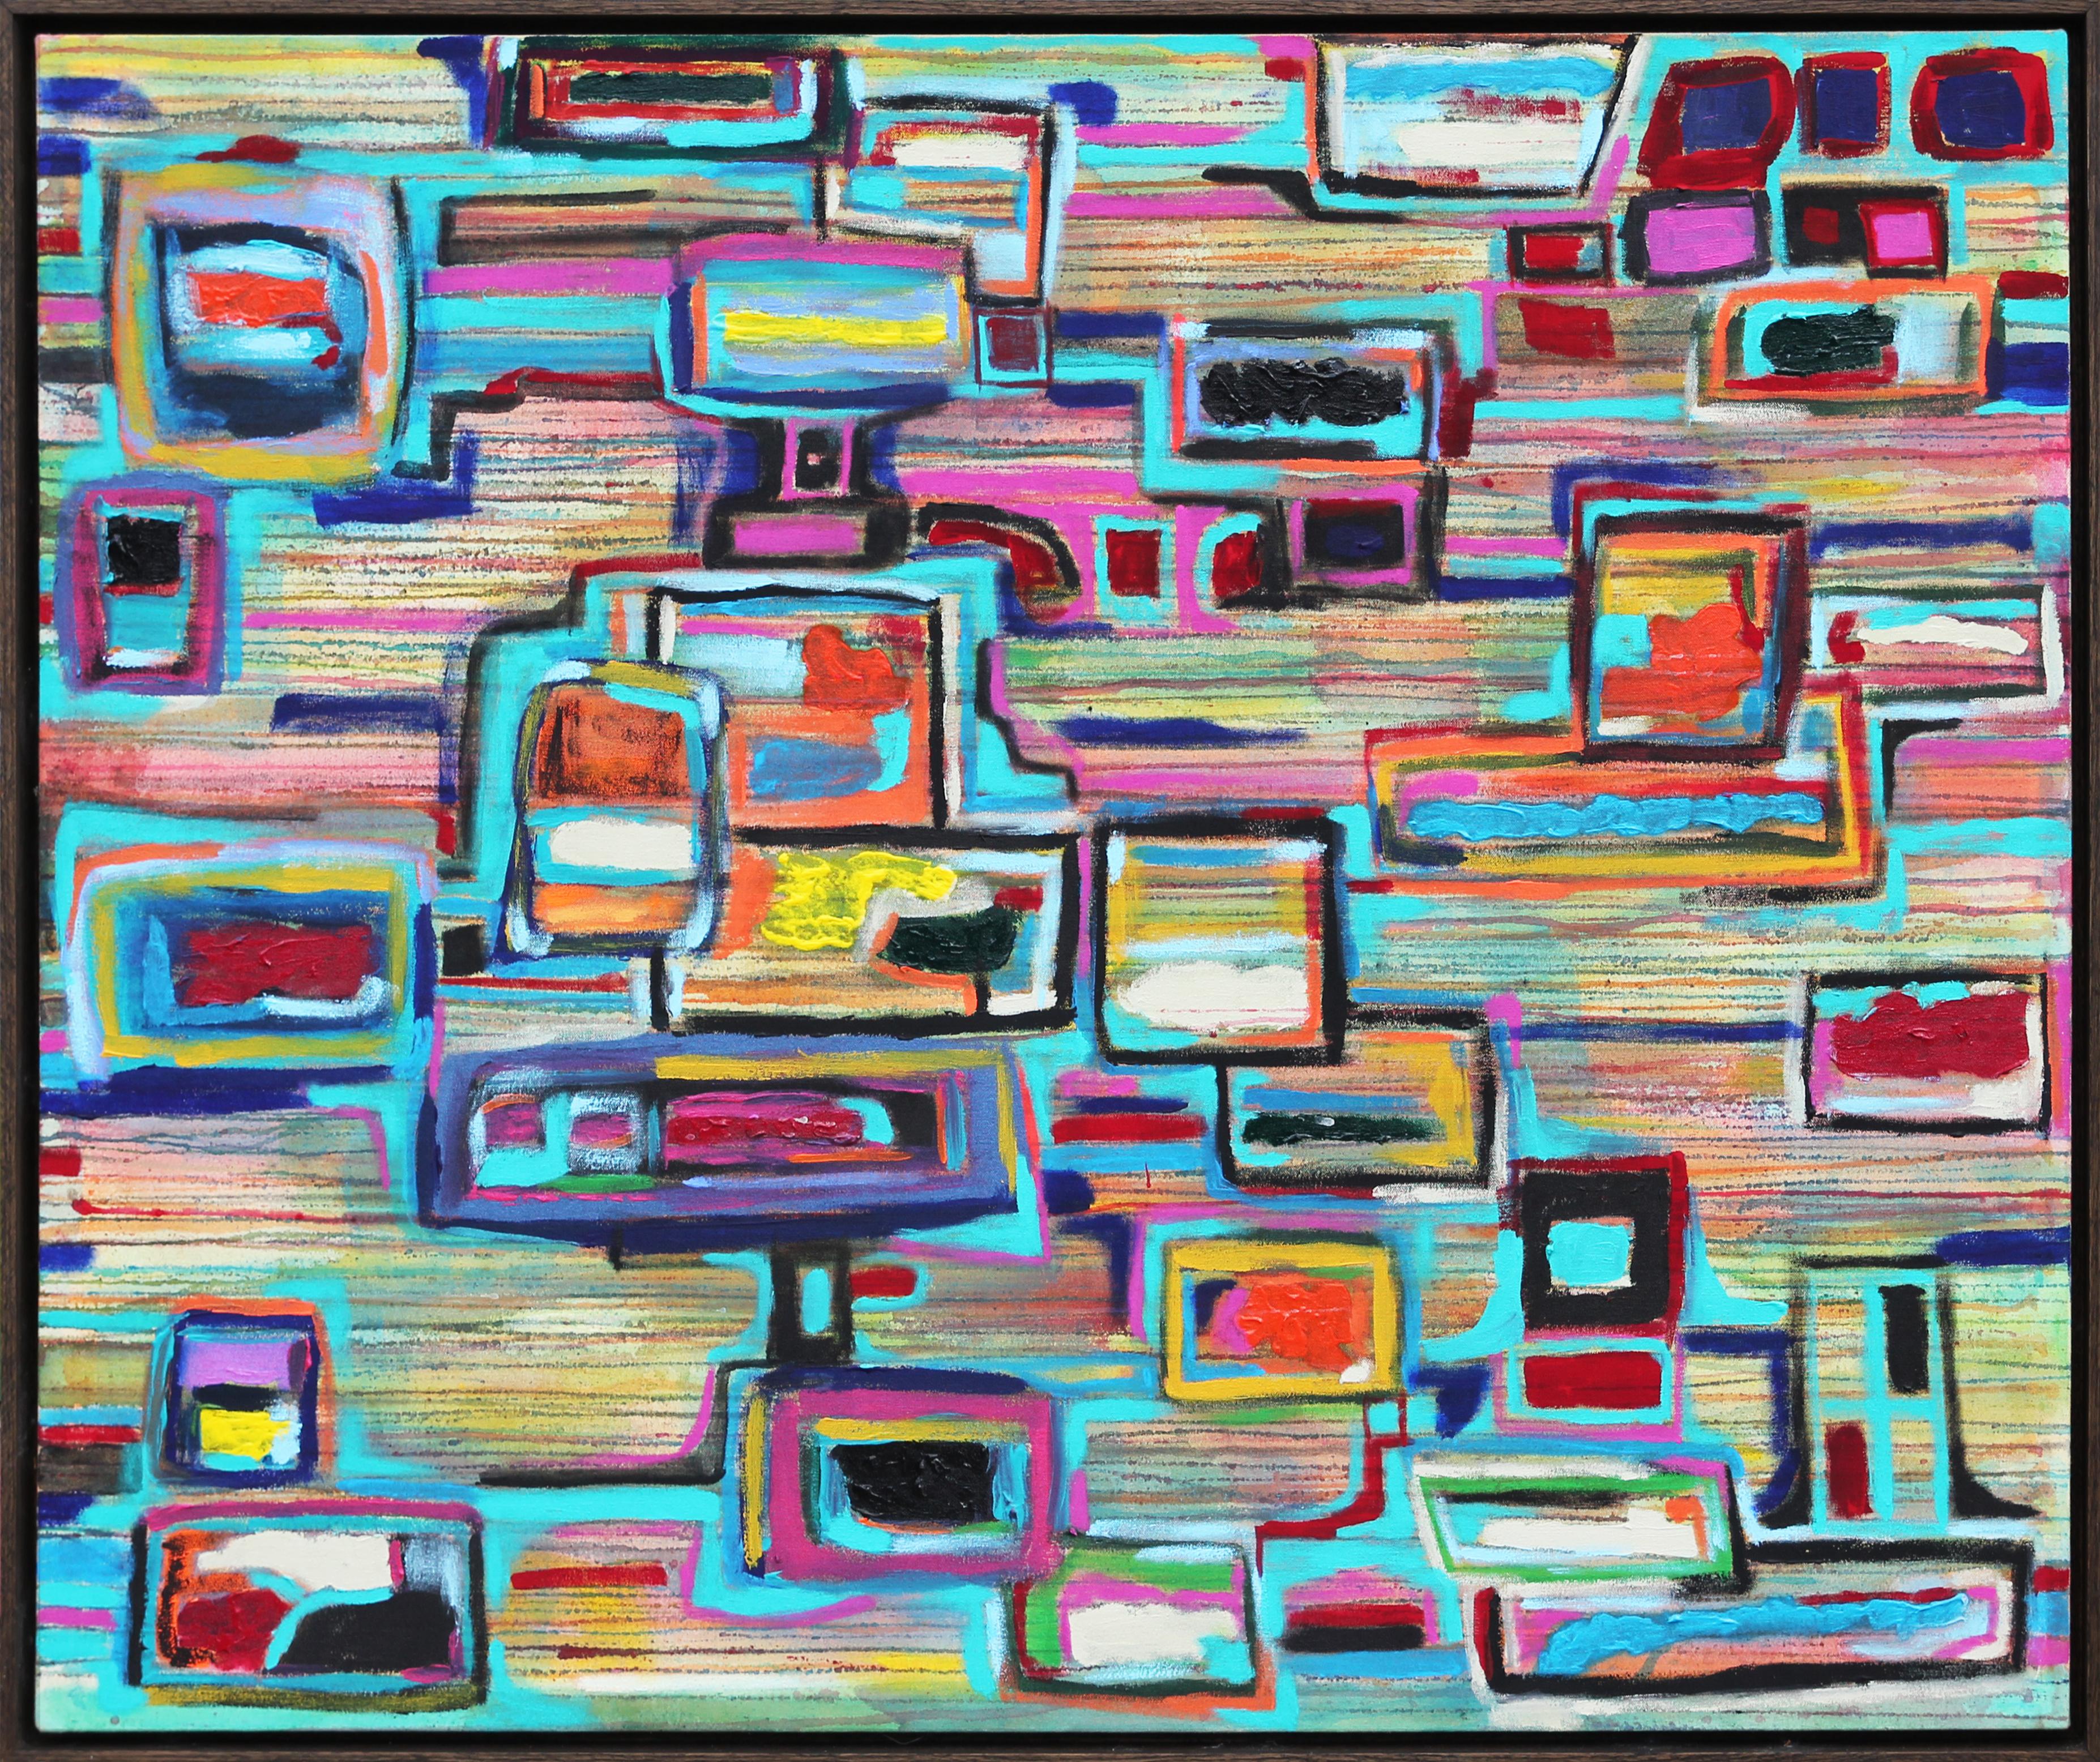 Paul Reeves Landscape Painting – Zeitgenössisches abstraktes kubistisches Gemälde „Static Conundrum“ in Blau, Grün und Rosa